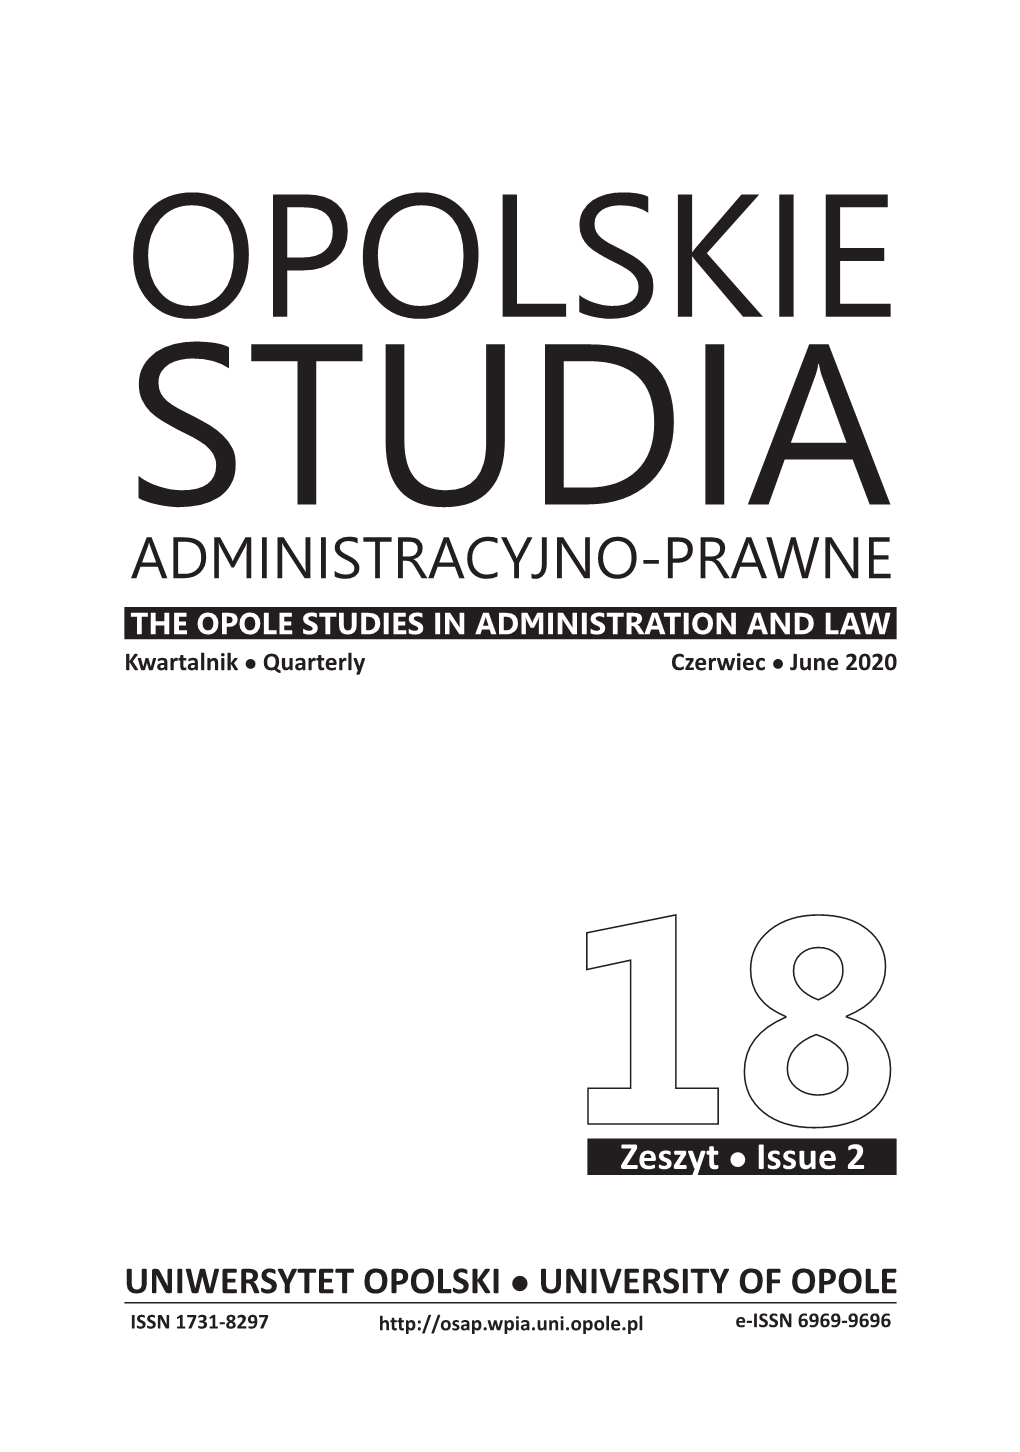 ADMINISTRACYJNO-PRAWNE the OPOLE STUDIES in ADMINISTRATION and LAW Kwartalnikl Quarterly Czerwiecl June 2020